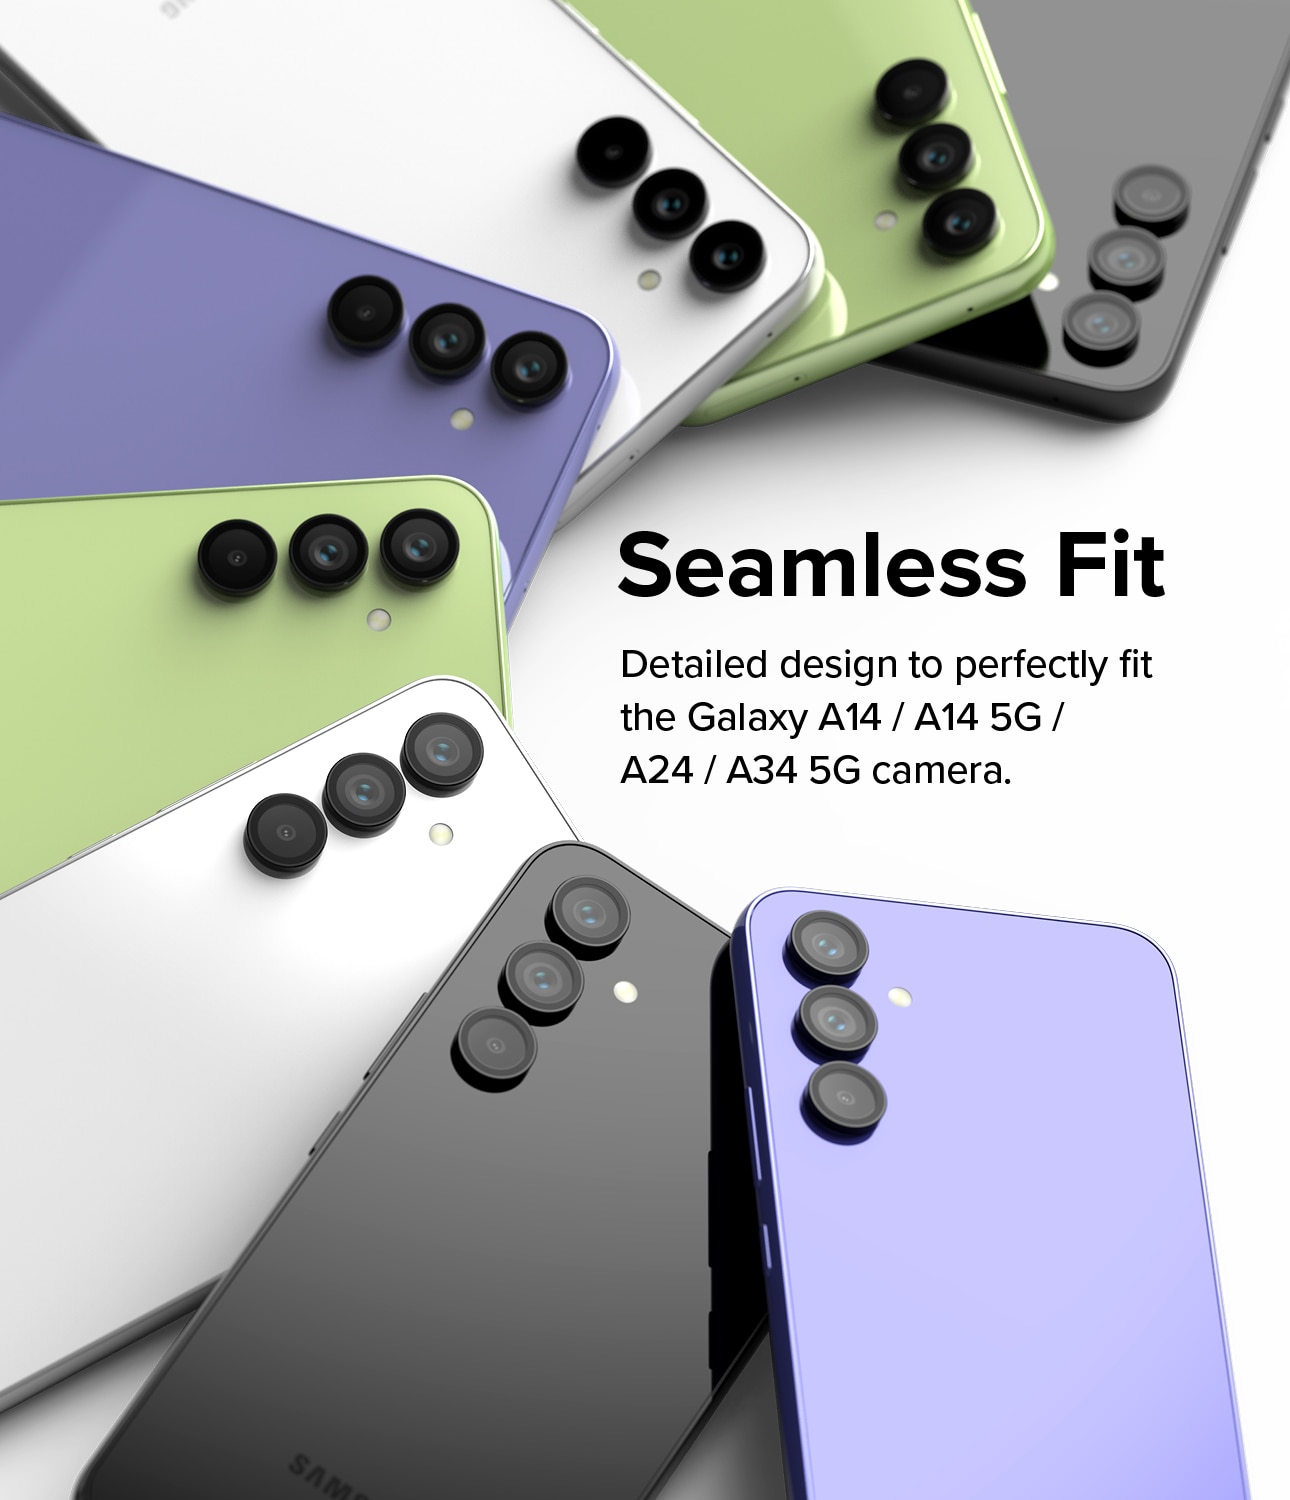 Samsung Galaxy A14 Camera Lens Frame Glass Black